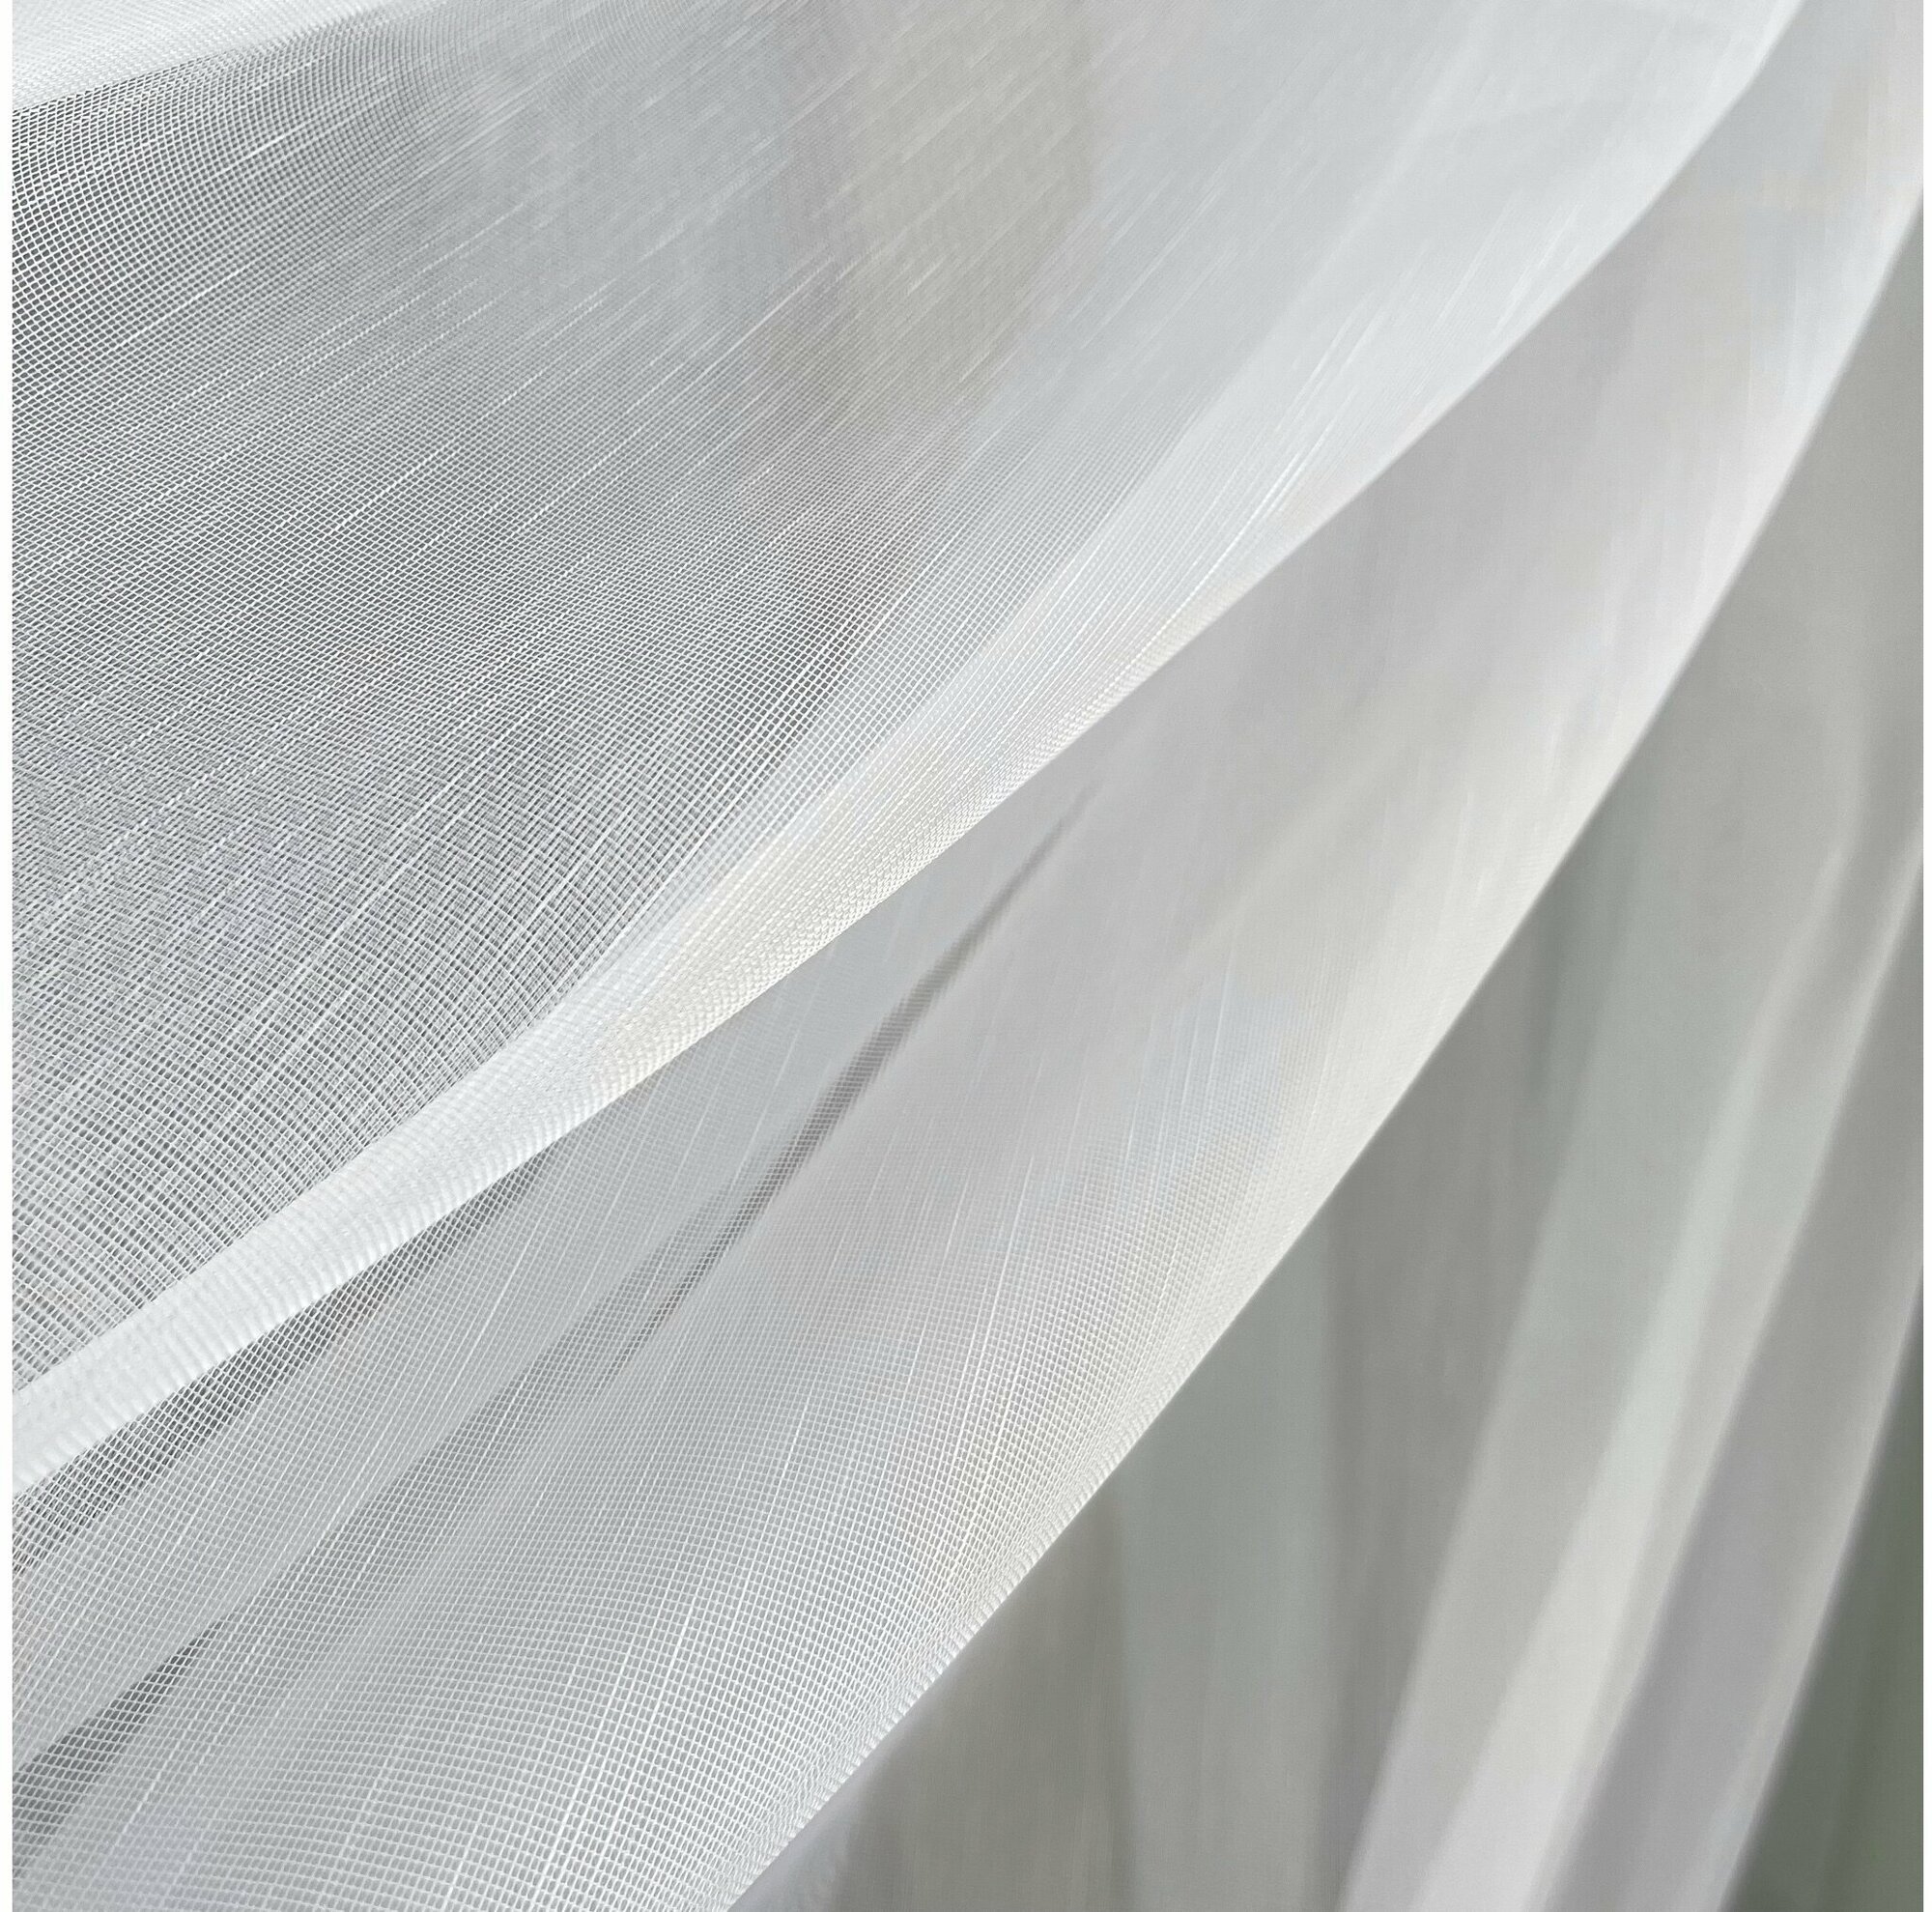 Тюль Анкара (дождик на сетке) отрез 3 метра, высота 330 см, ткань для пошива штор, занавесок